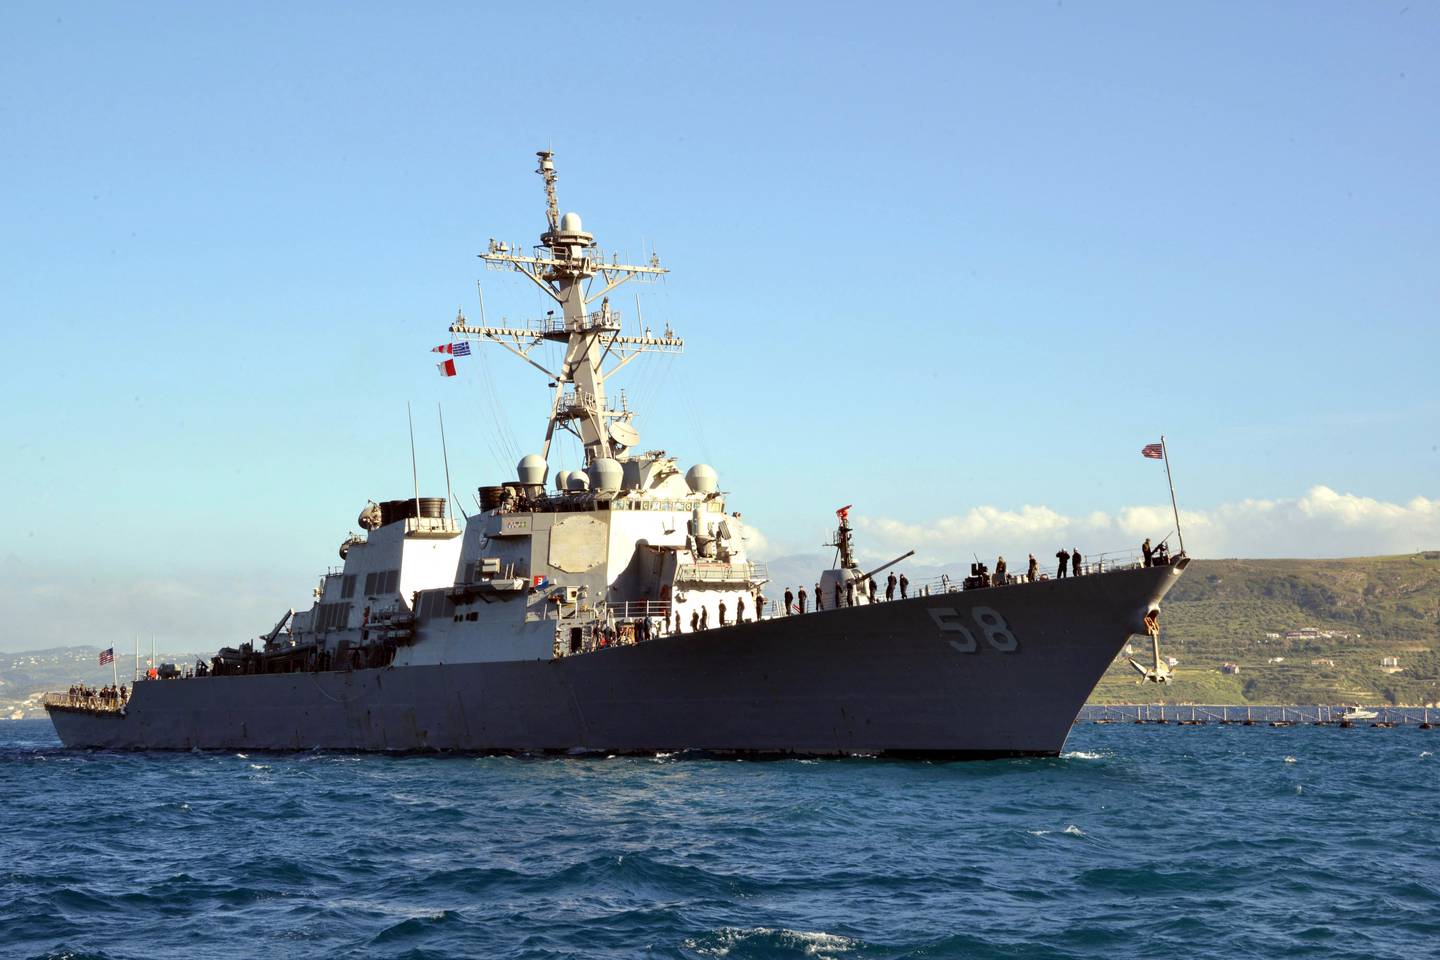 El ejército estadounidense dijo que sus fuerzas derribaron un misil de crucero disparado contra un buque de guerra estadounidense desde zonas controladas por los hutíes en Yemen.